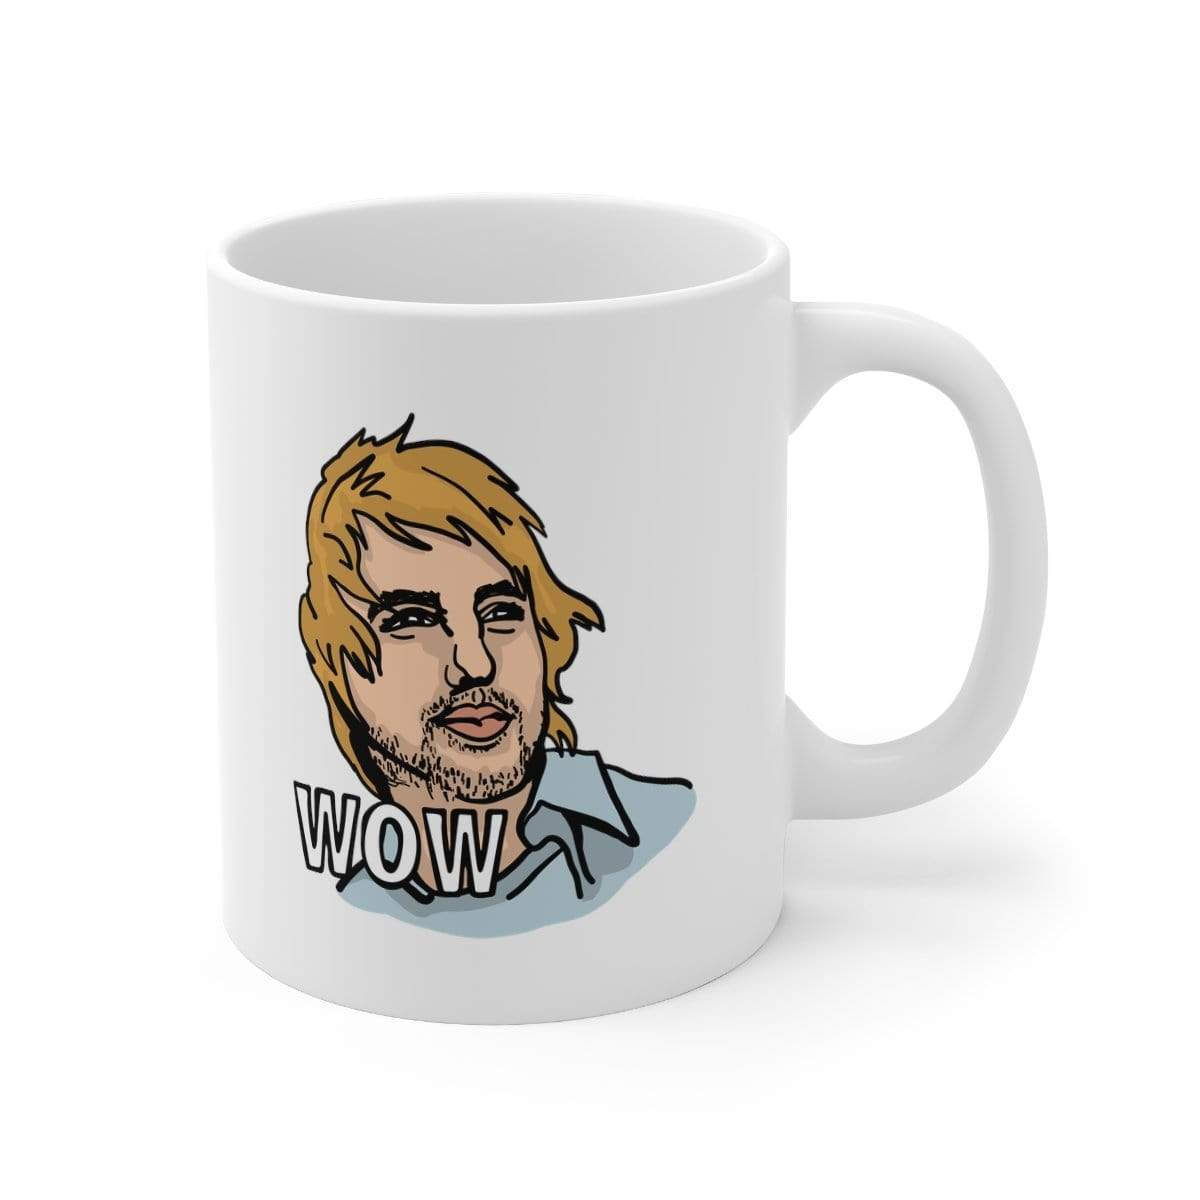 Wow 😲 - Coffee Mug